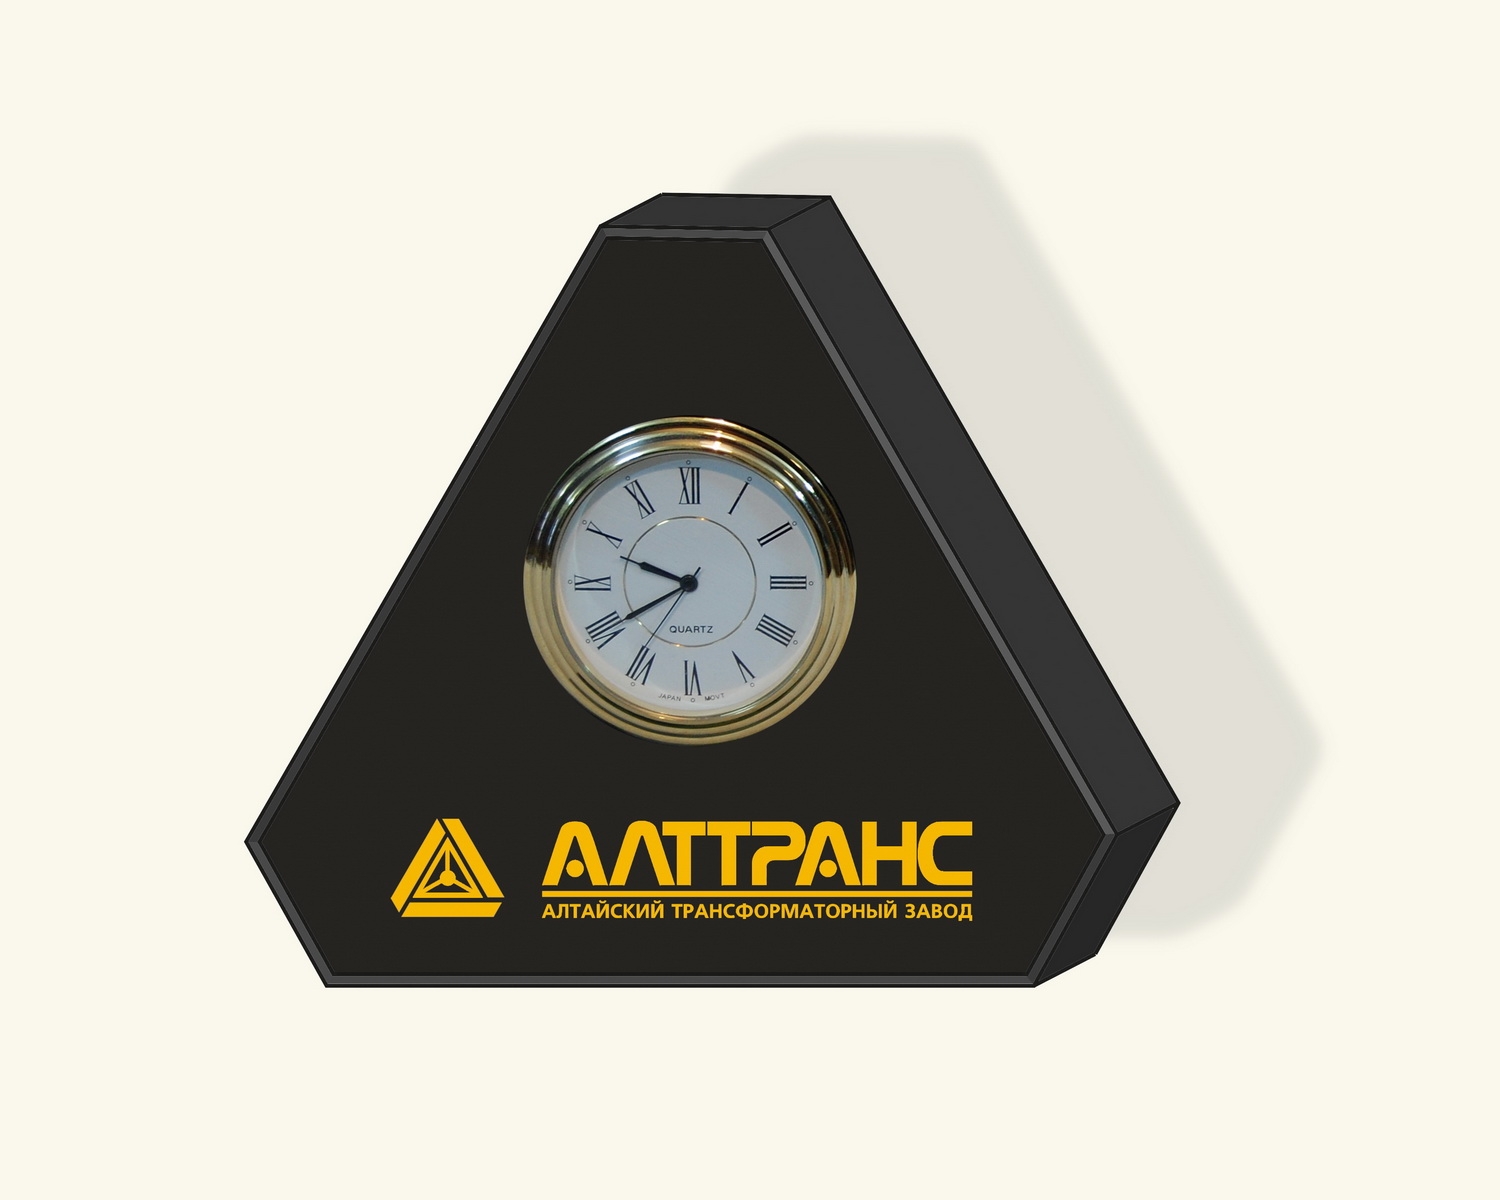 Сувенир часы с логотипом компании.